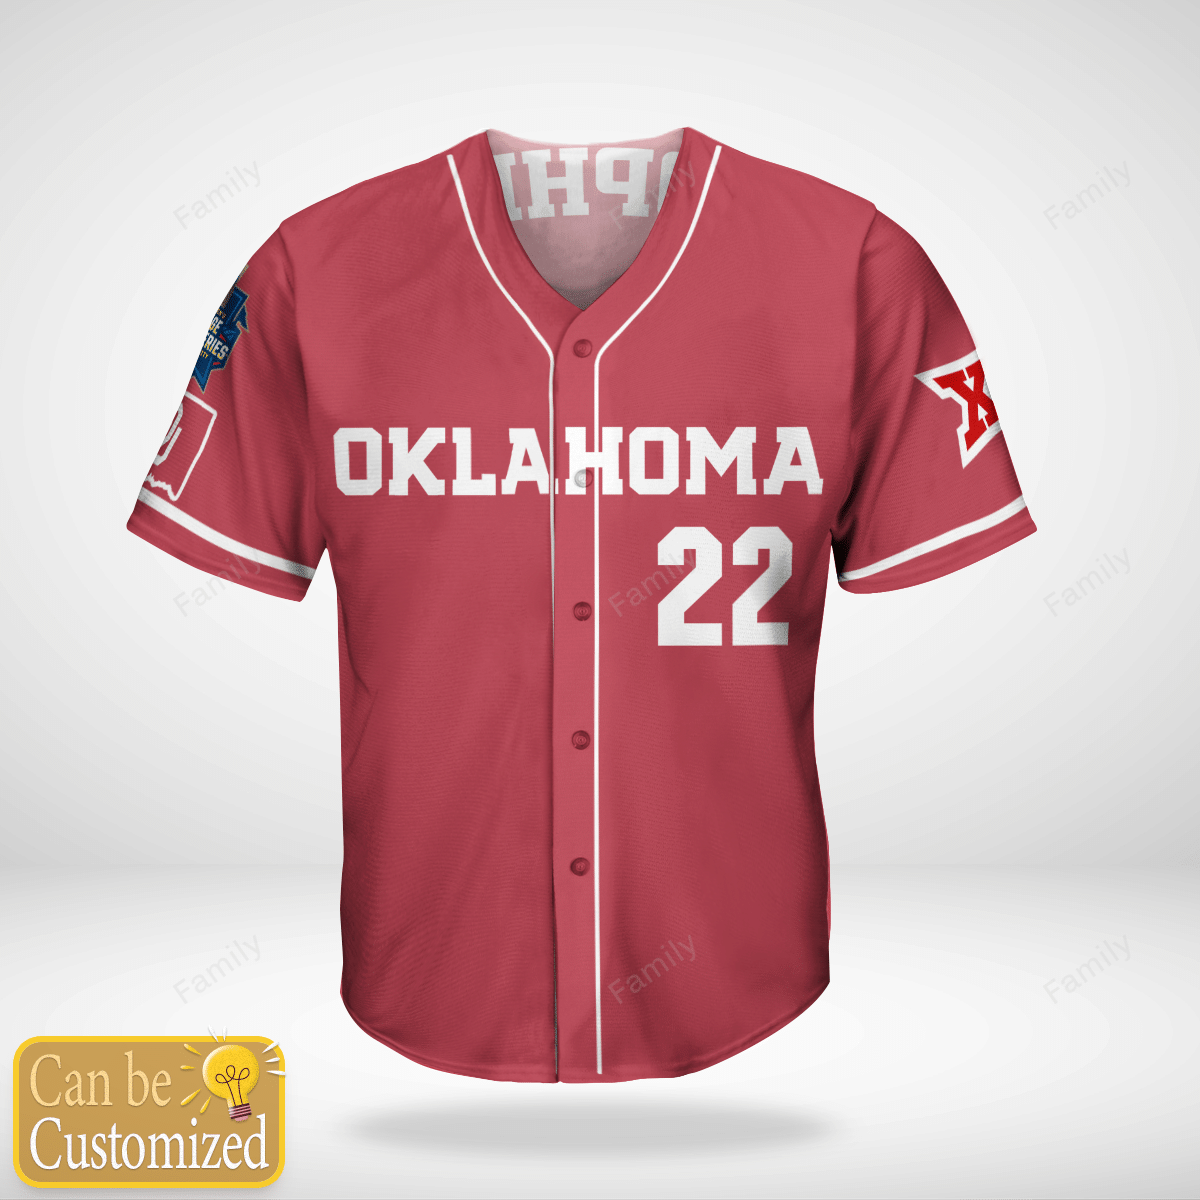 Personalized Oklahoma Softball Jersey